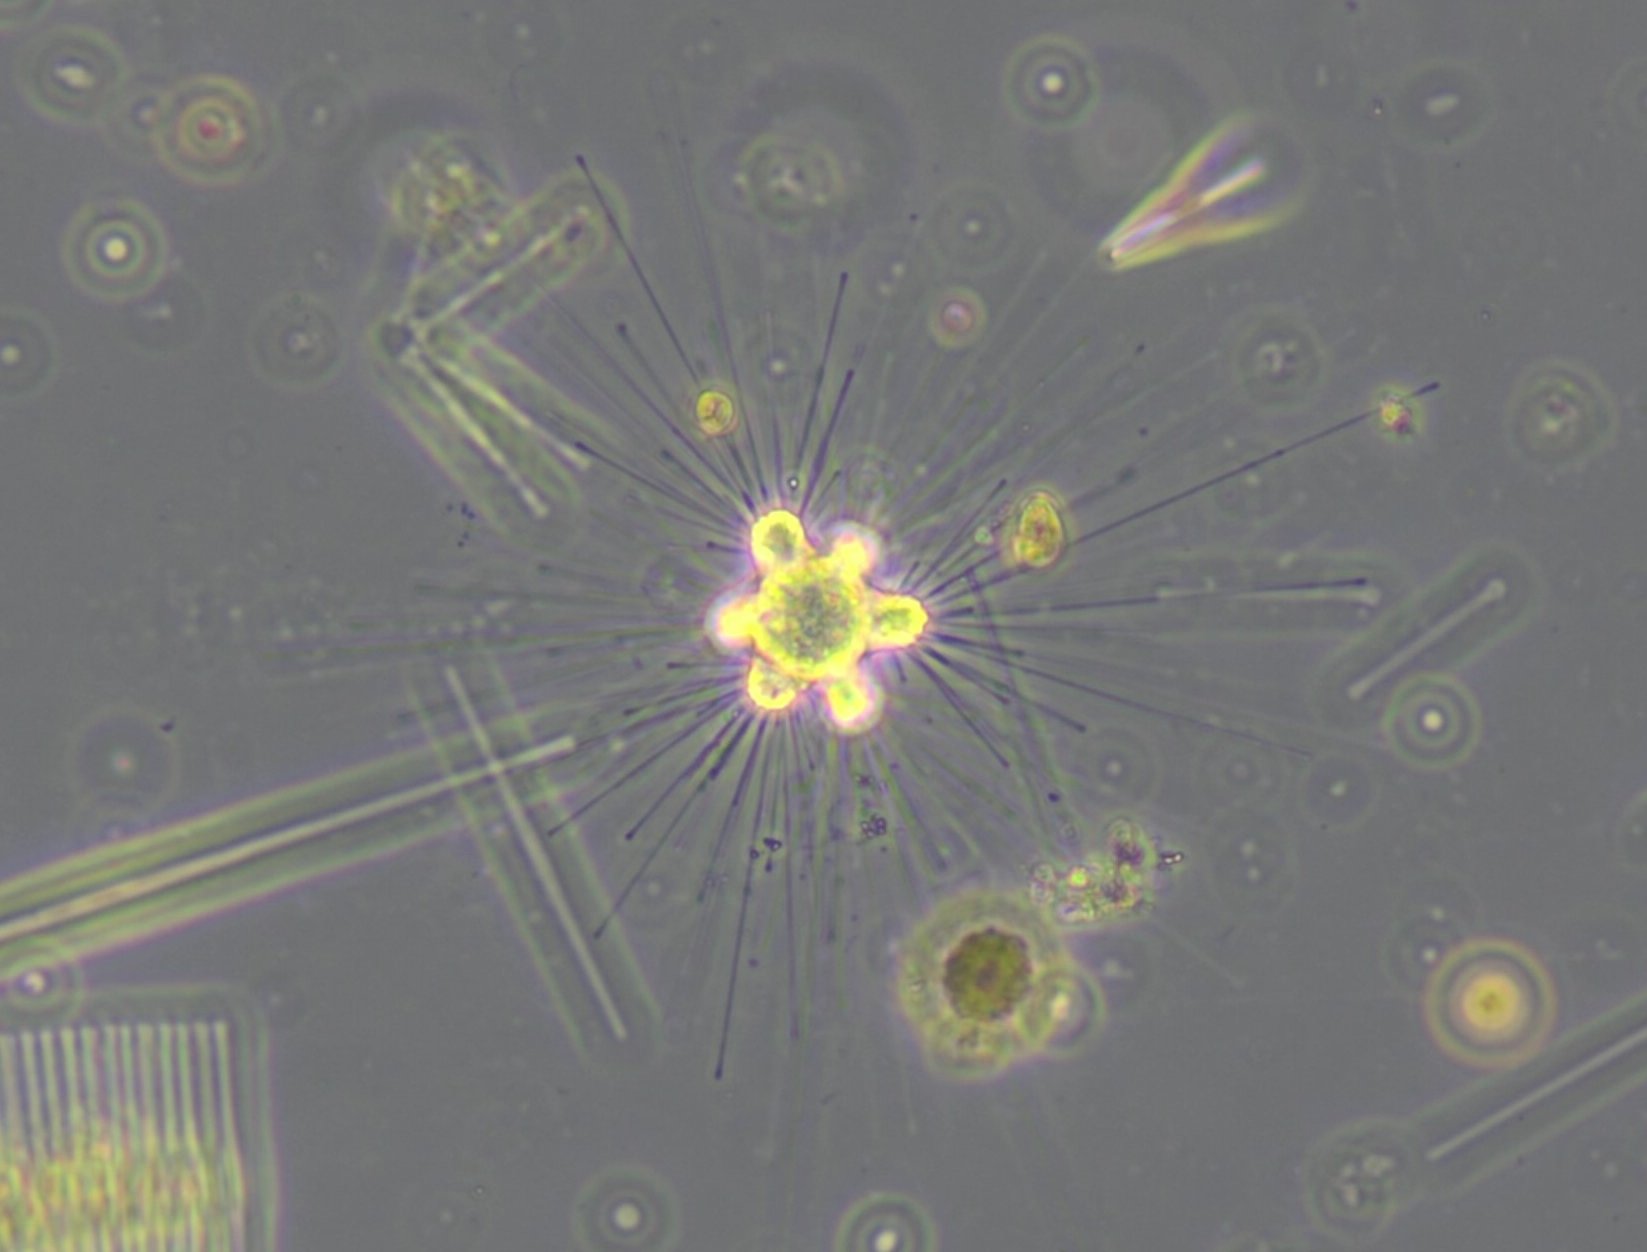 Mikroskopische Aufnahme eines Sonnentierchens - Heliozoa